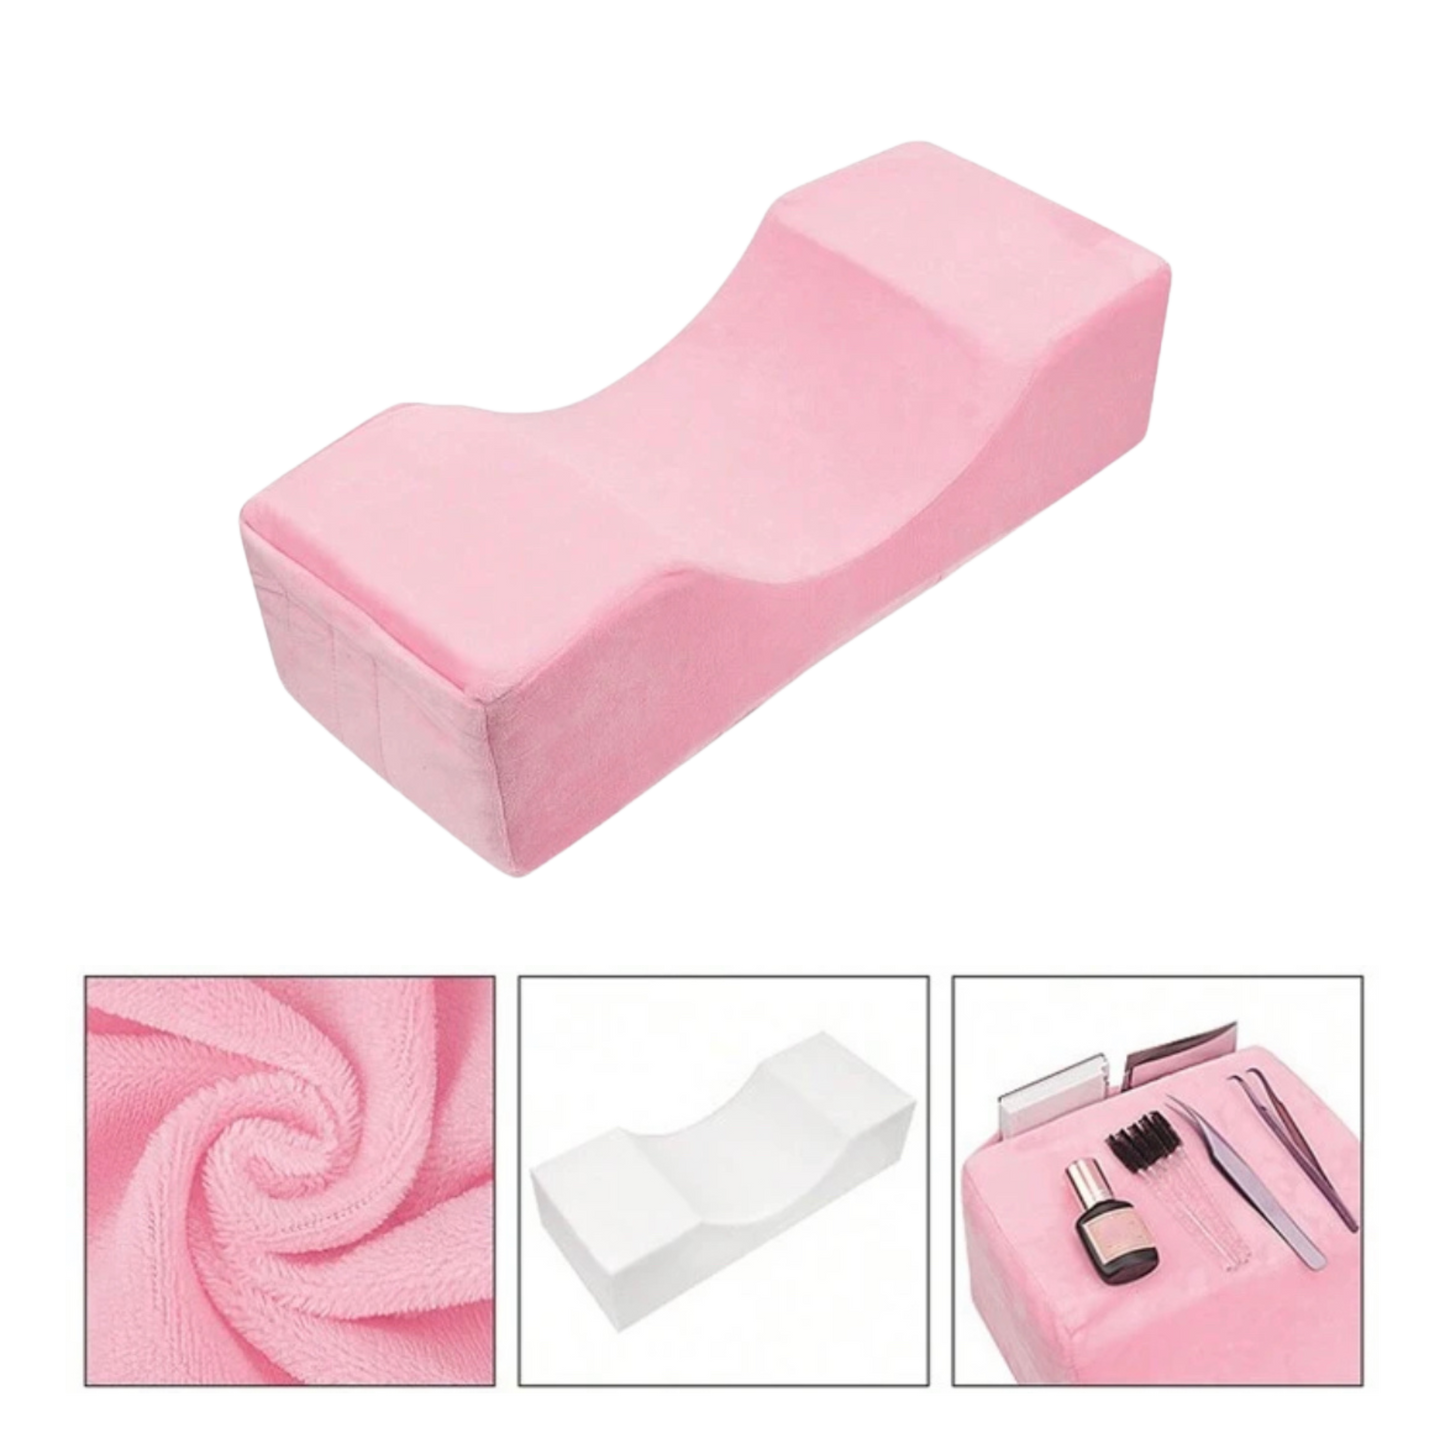 Lash pillow roze